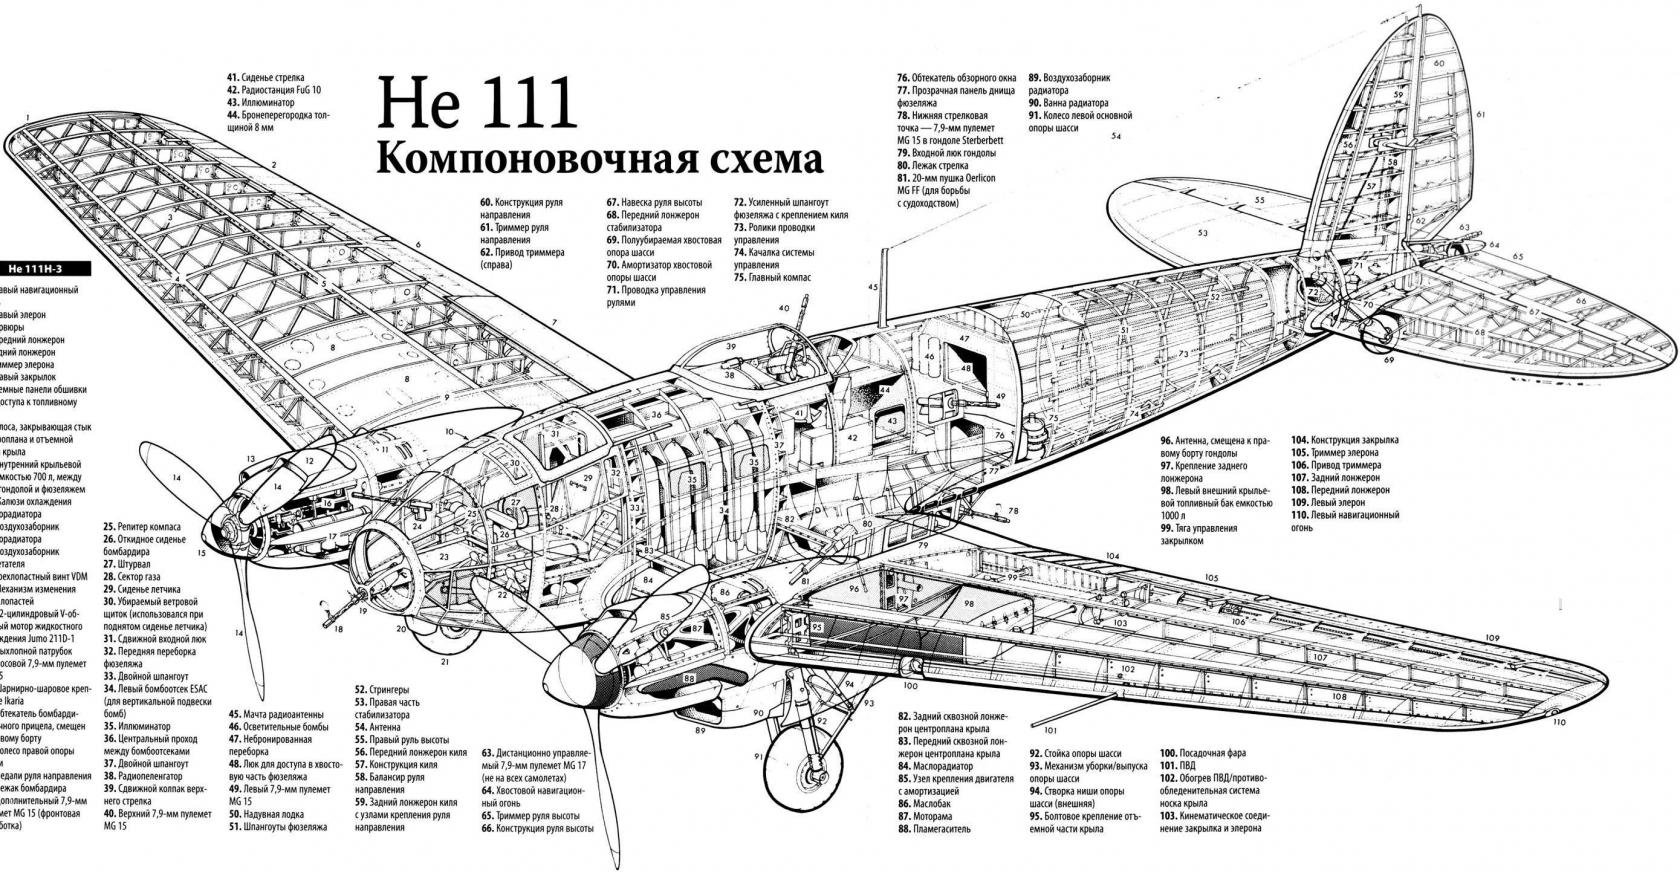 Испытано в Великобритании. Средний бомбардировщик Heinkel 111H-1